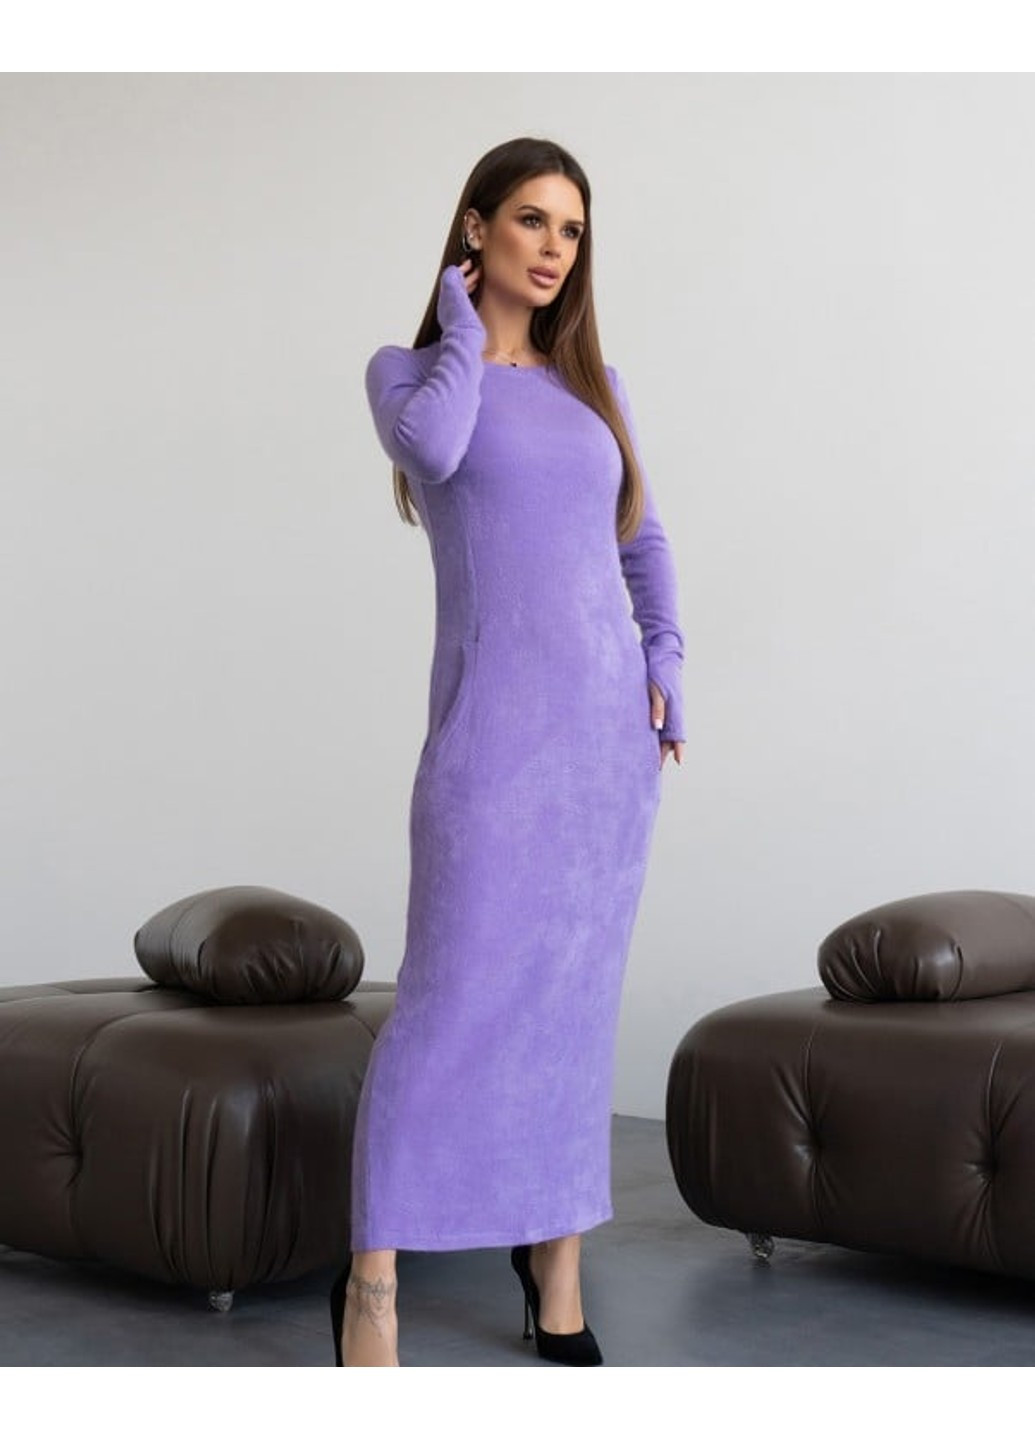 Фиолетовое повседневный платья 14430 сиреневый ISSA PLUS